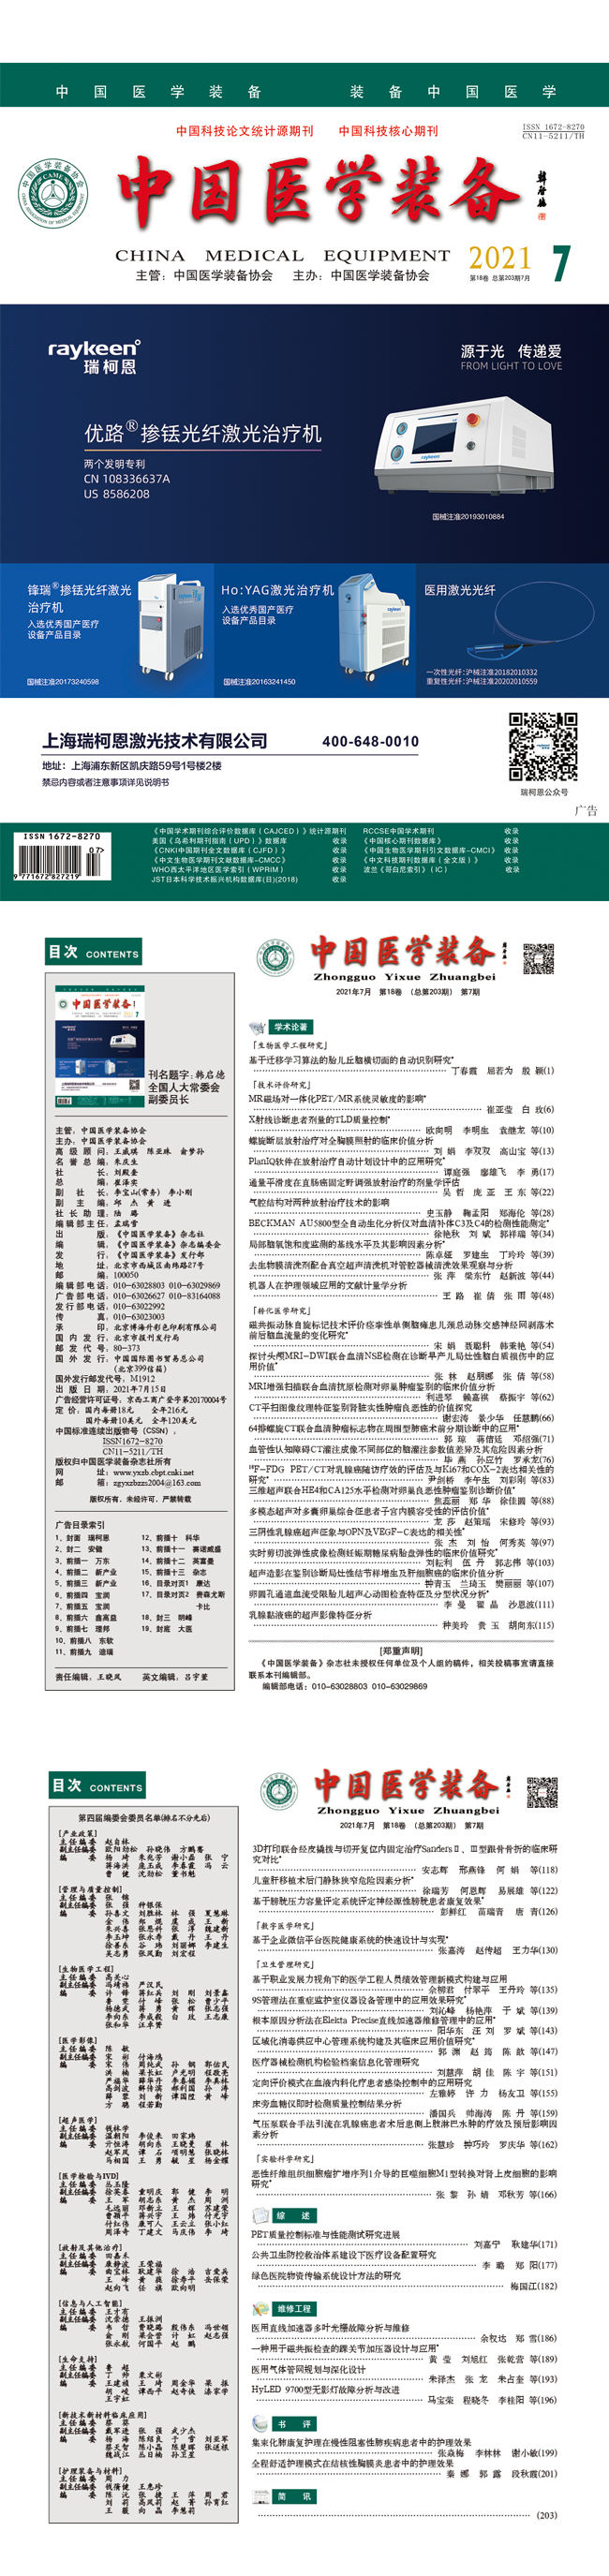 《中国医学装备》2021年7期出版(图1)